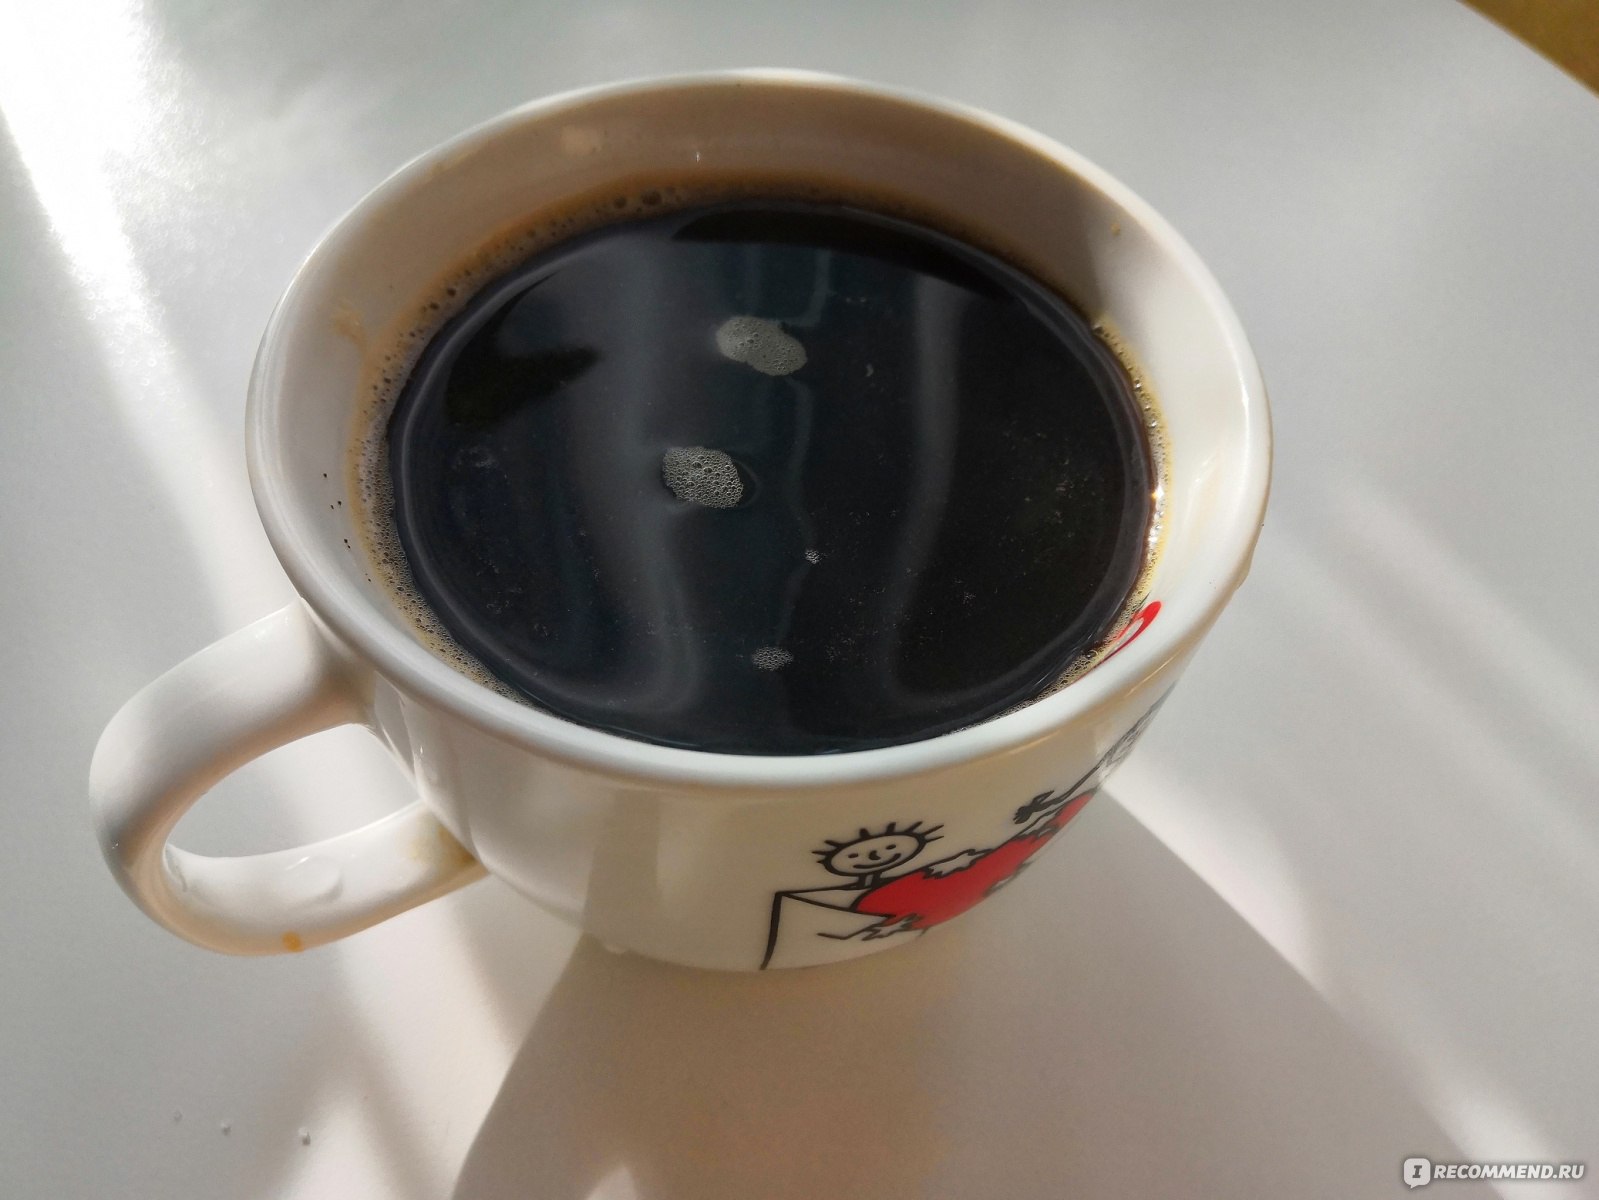 Хороший крепкий кофе. Маленький крепкий кофе с насыщенным вкусом Геншин.